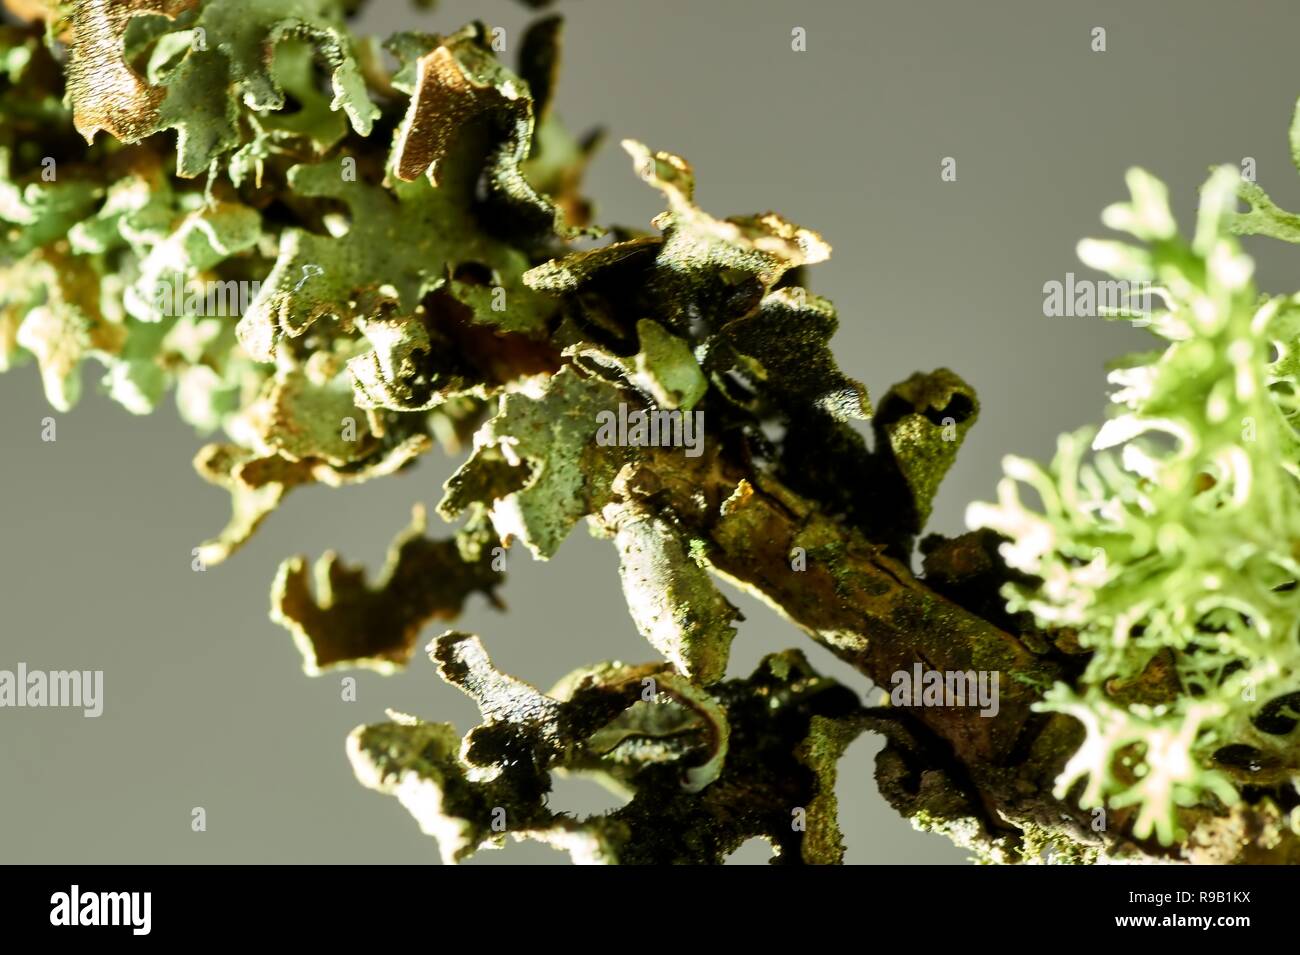 Thallus species of lichen Xanthoria parietina, Parmelia sulcata, Physcia tenella on a branch close-up, in the autumn Stock Photo